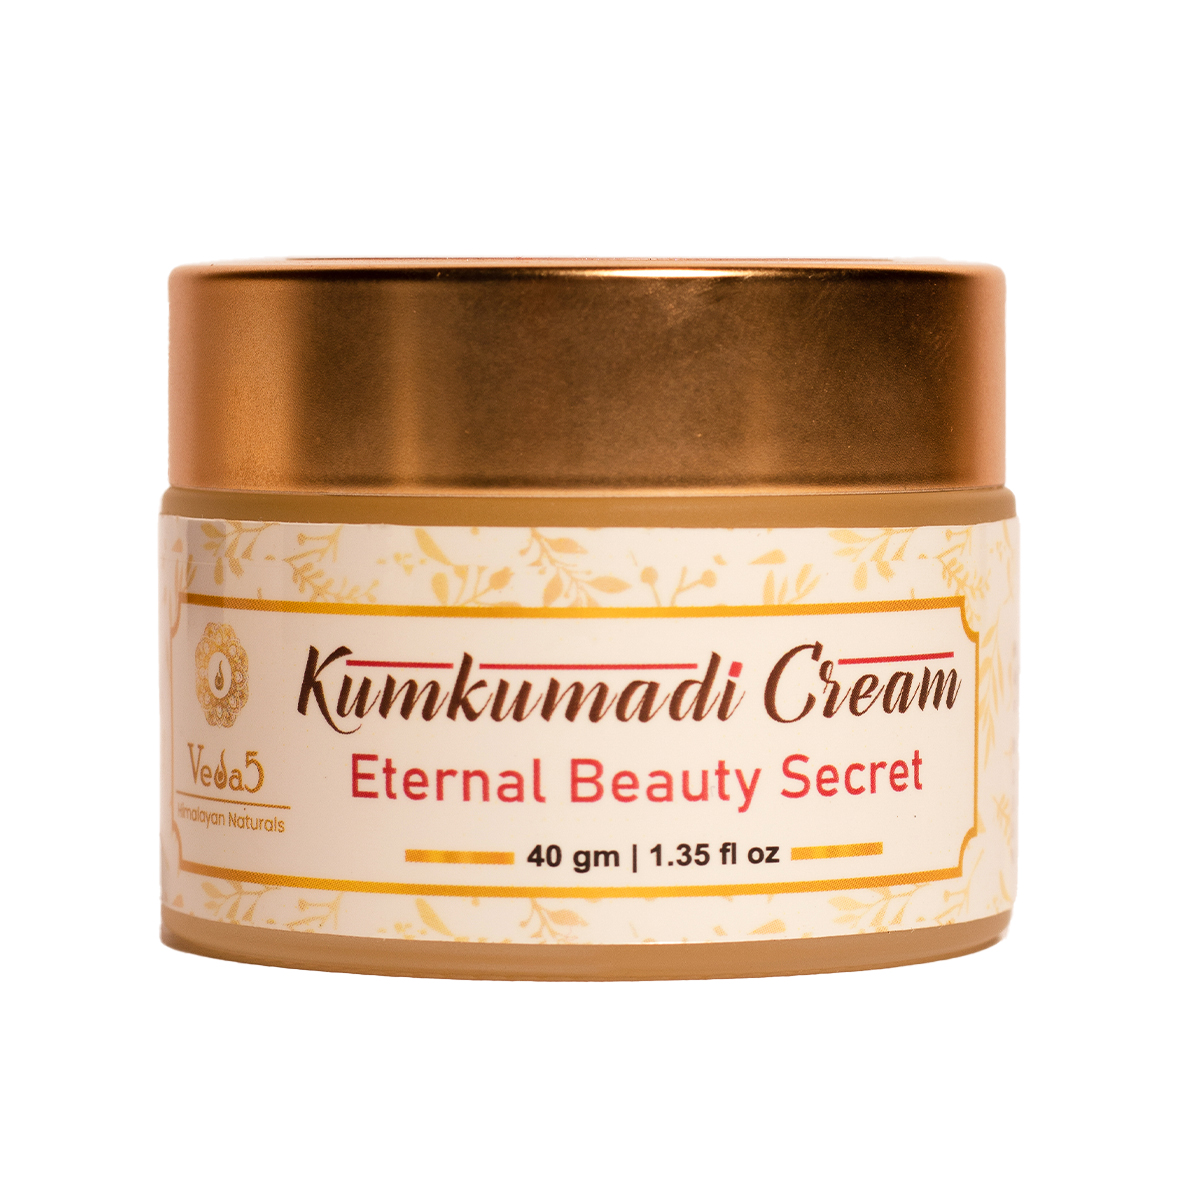 Kumkumadi Face Cream by Veda5 Himalayan Naturals 1